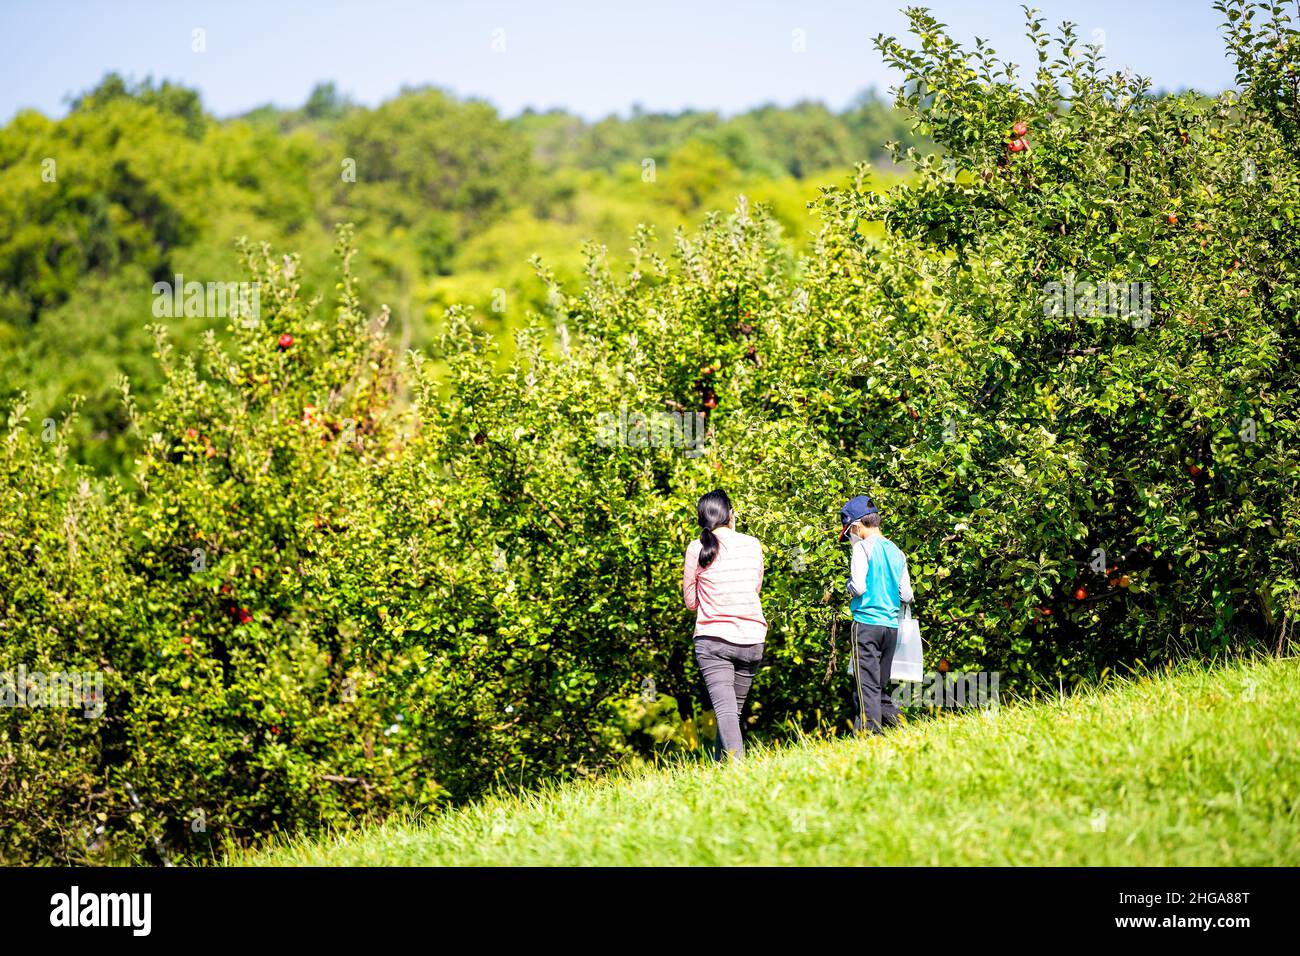 Markham, Stati Uniti d'America - 7 settembre 2020: Fattoria di orchard di Apple nel nord della Virginia con la famiglia della gente del candido in maschera facciale durante la raccolta di frutta sul verde g Foto Stock